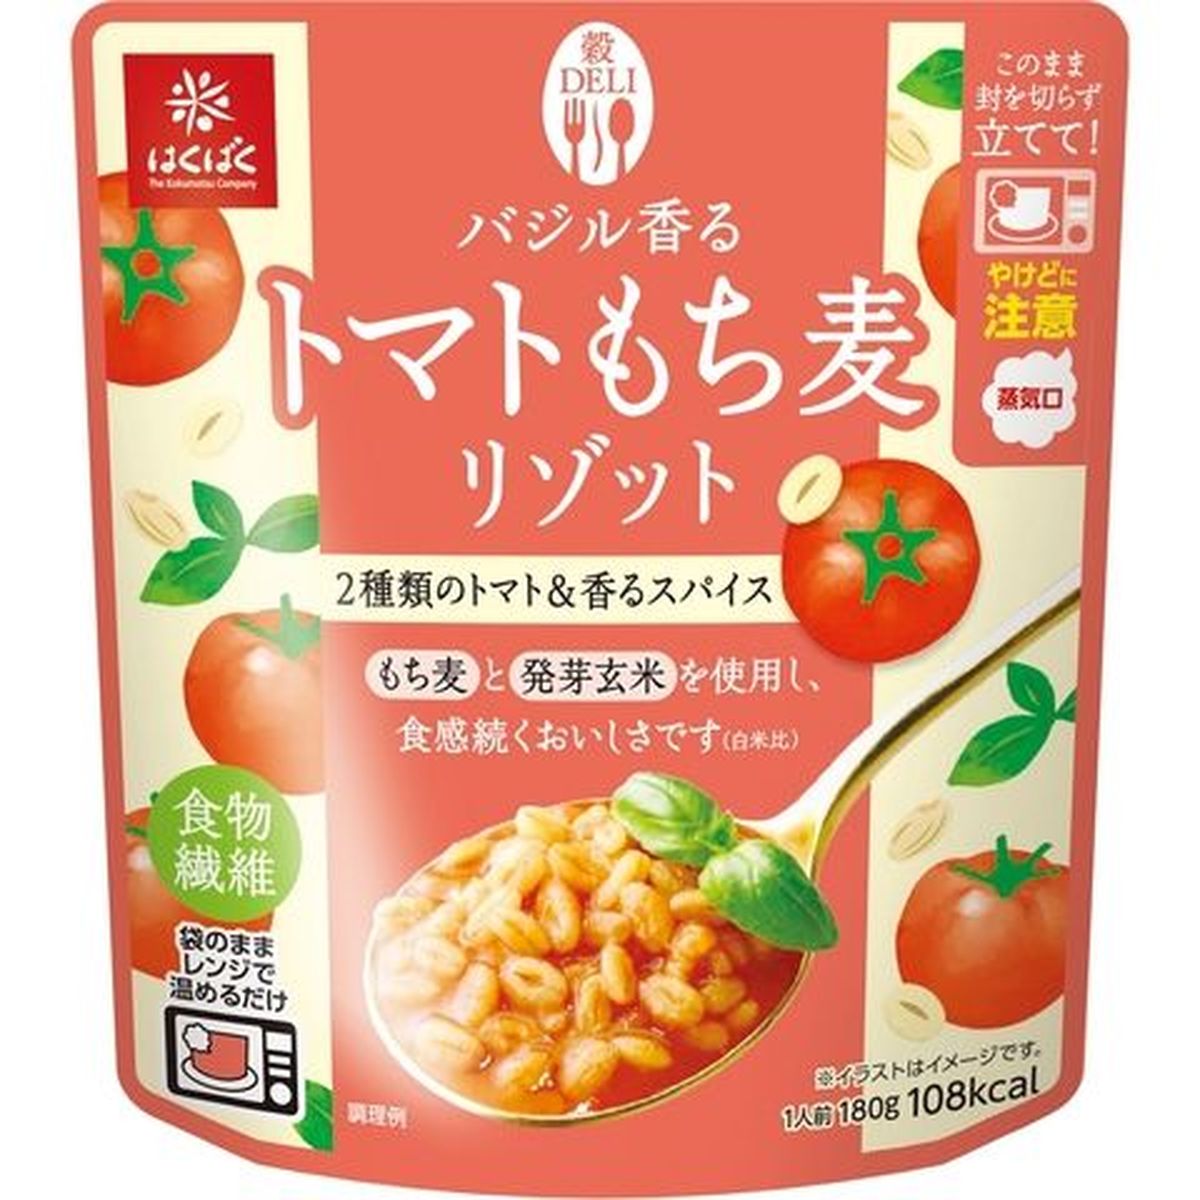 【8個入リ】ハクバク トマトモチ麦リゾット 180g